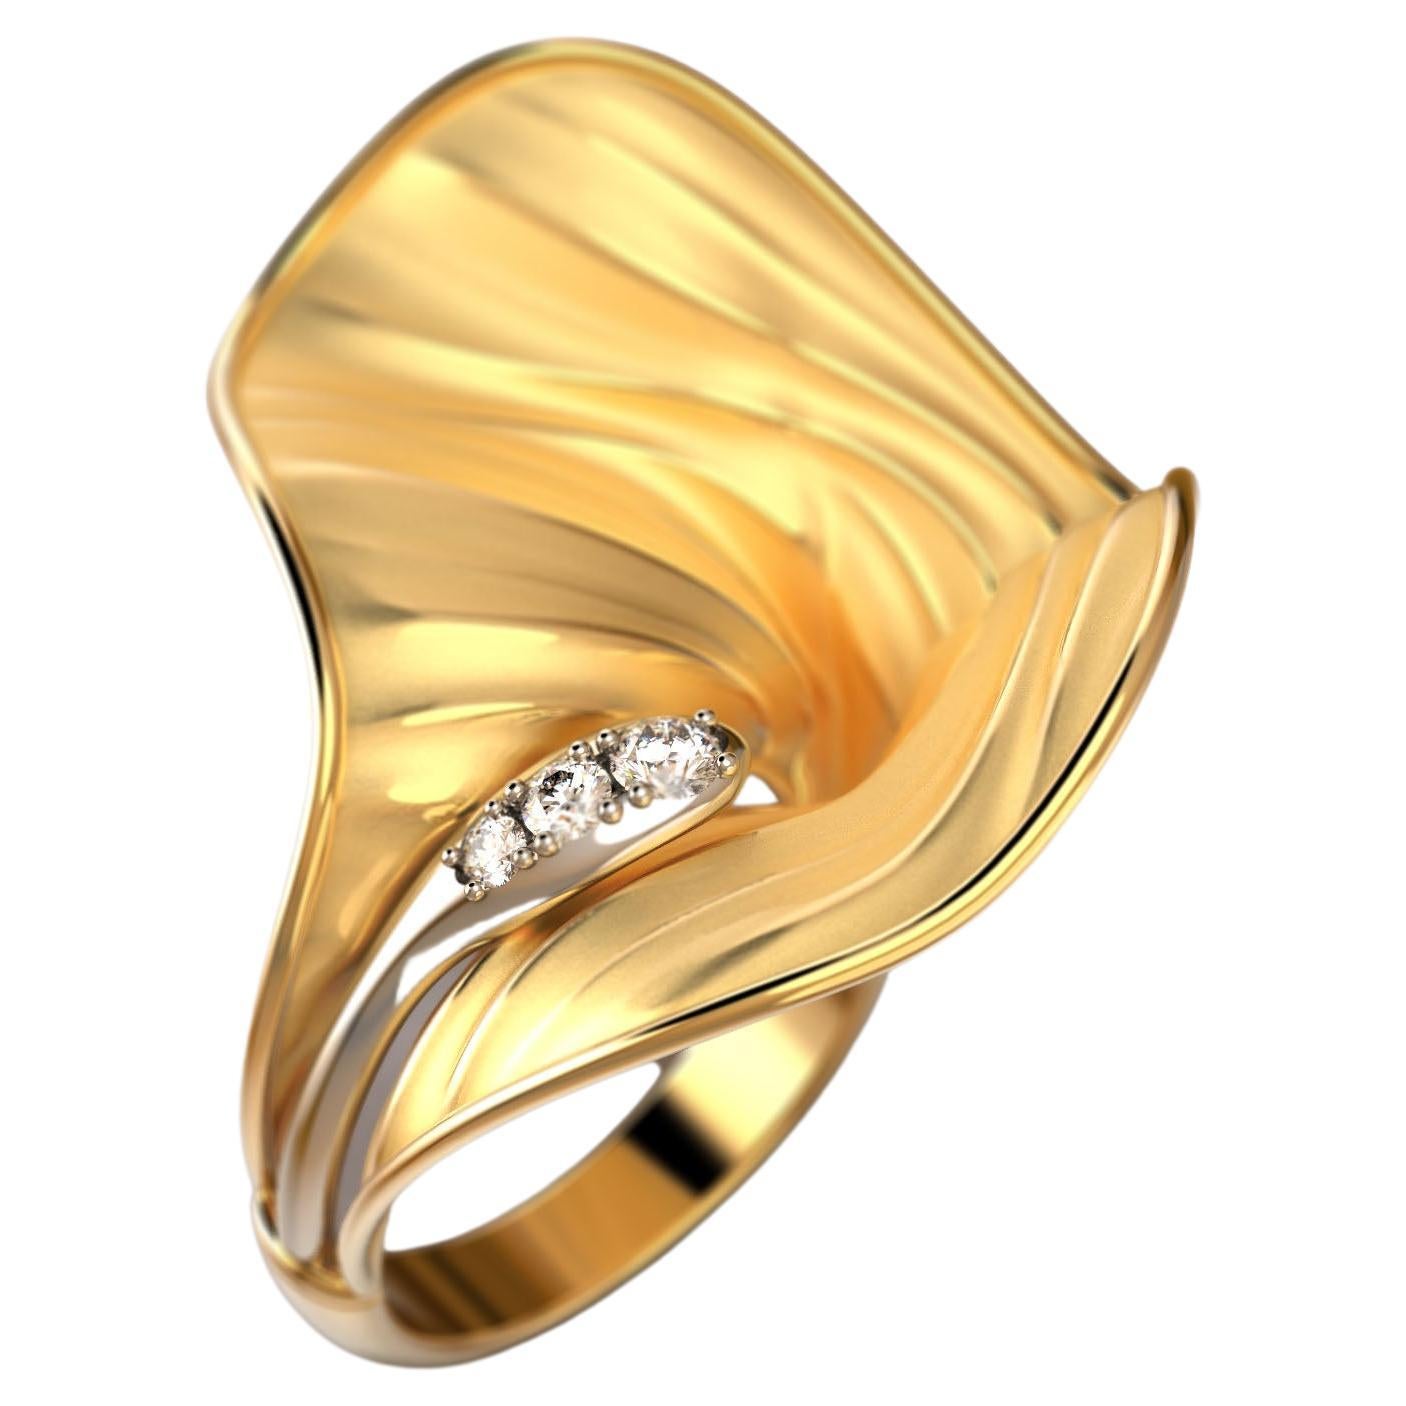 Oltremare Gioielli Bague en or 18 carats avec diamants, fabriquée en Italie